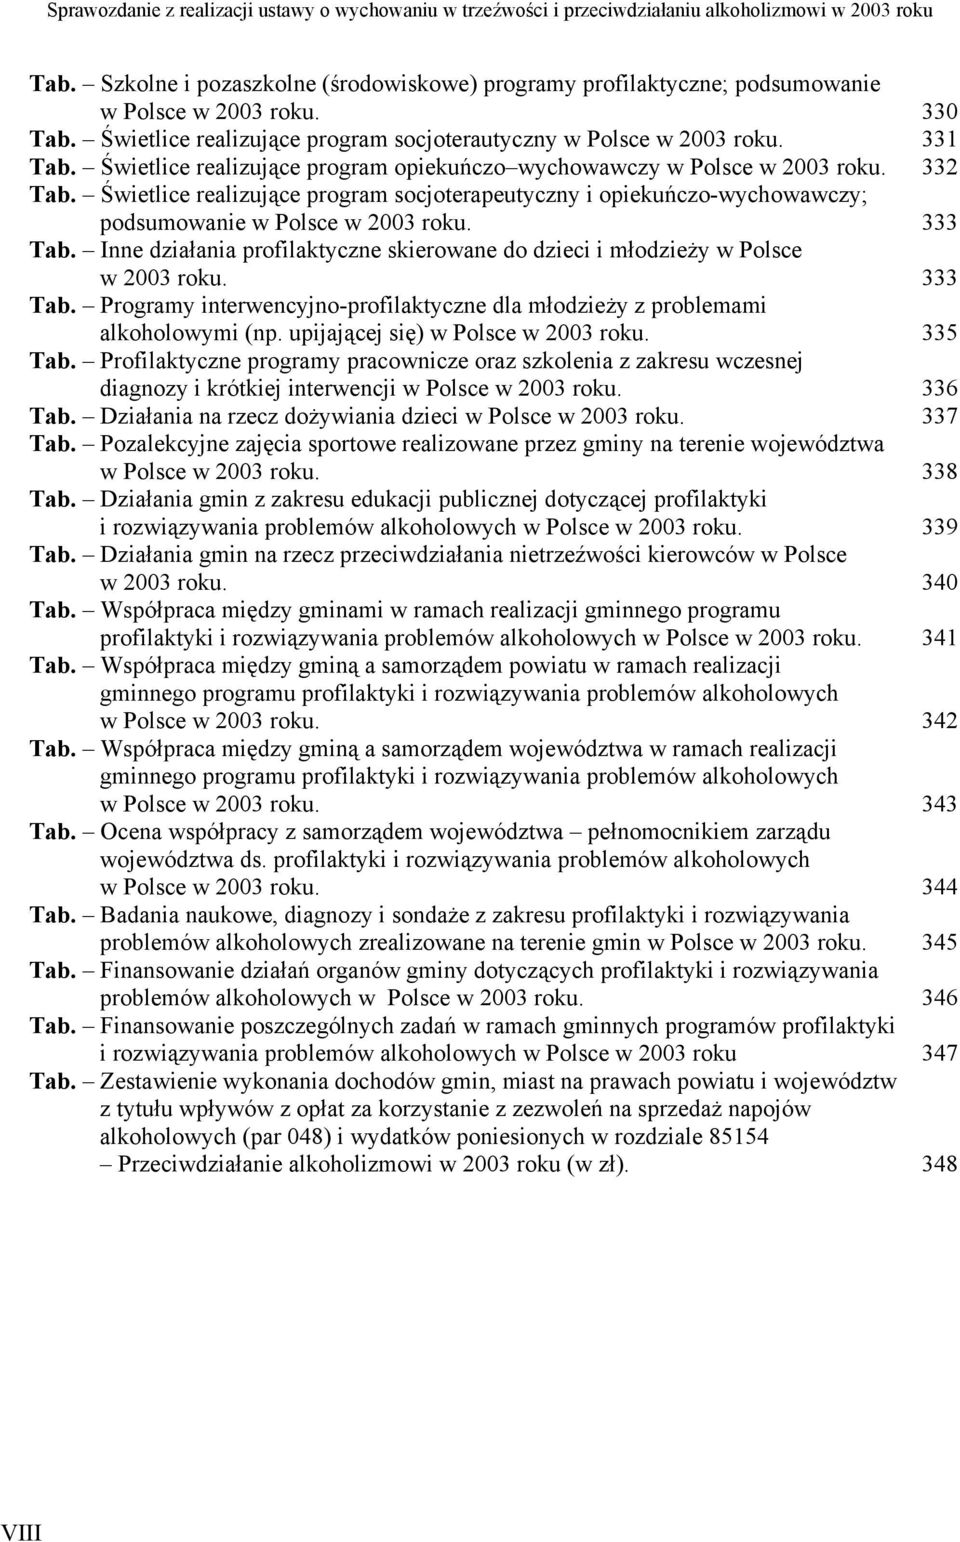 333 Tab. Inne działania profilaktyczne skierowane do dzieci i młodzieży w Polsce w 2003 roku. 333 Tab. Programy interwencyjno-profilaktyczne dla młodzieży z problemami alkoholowymi (np.